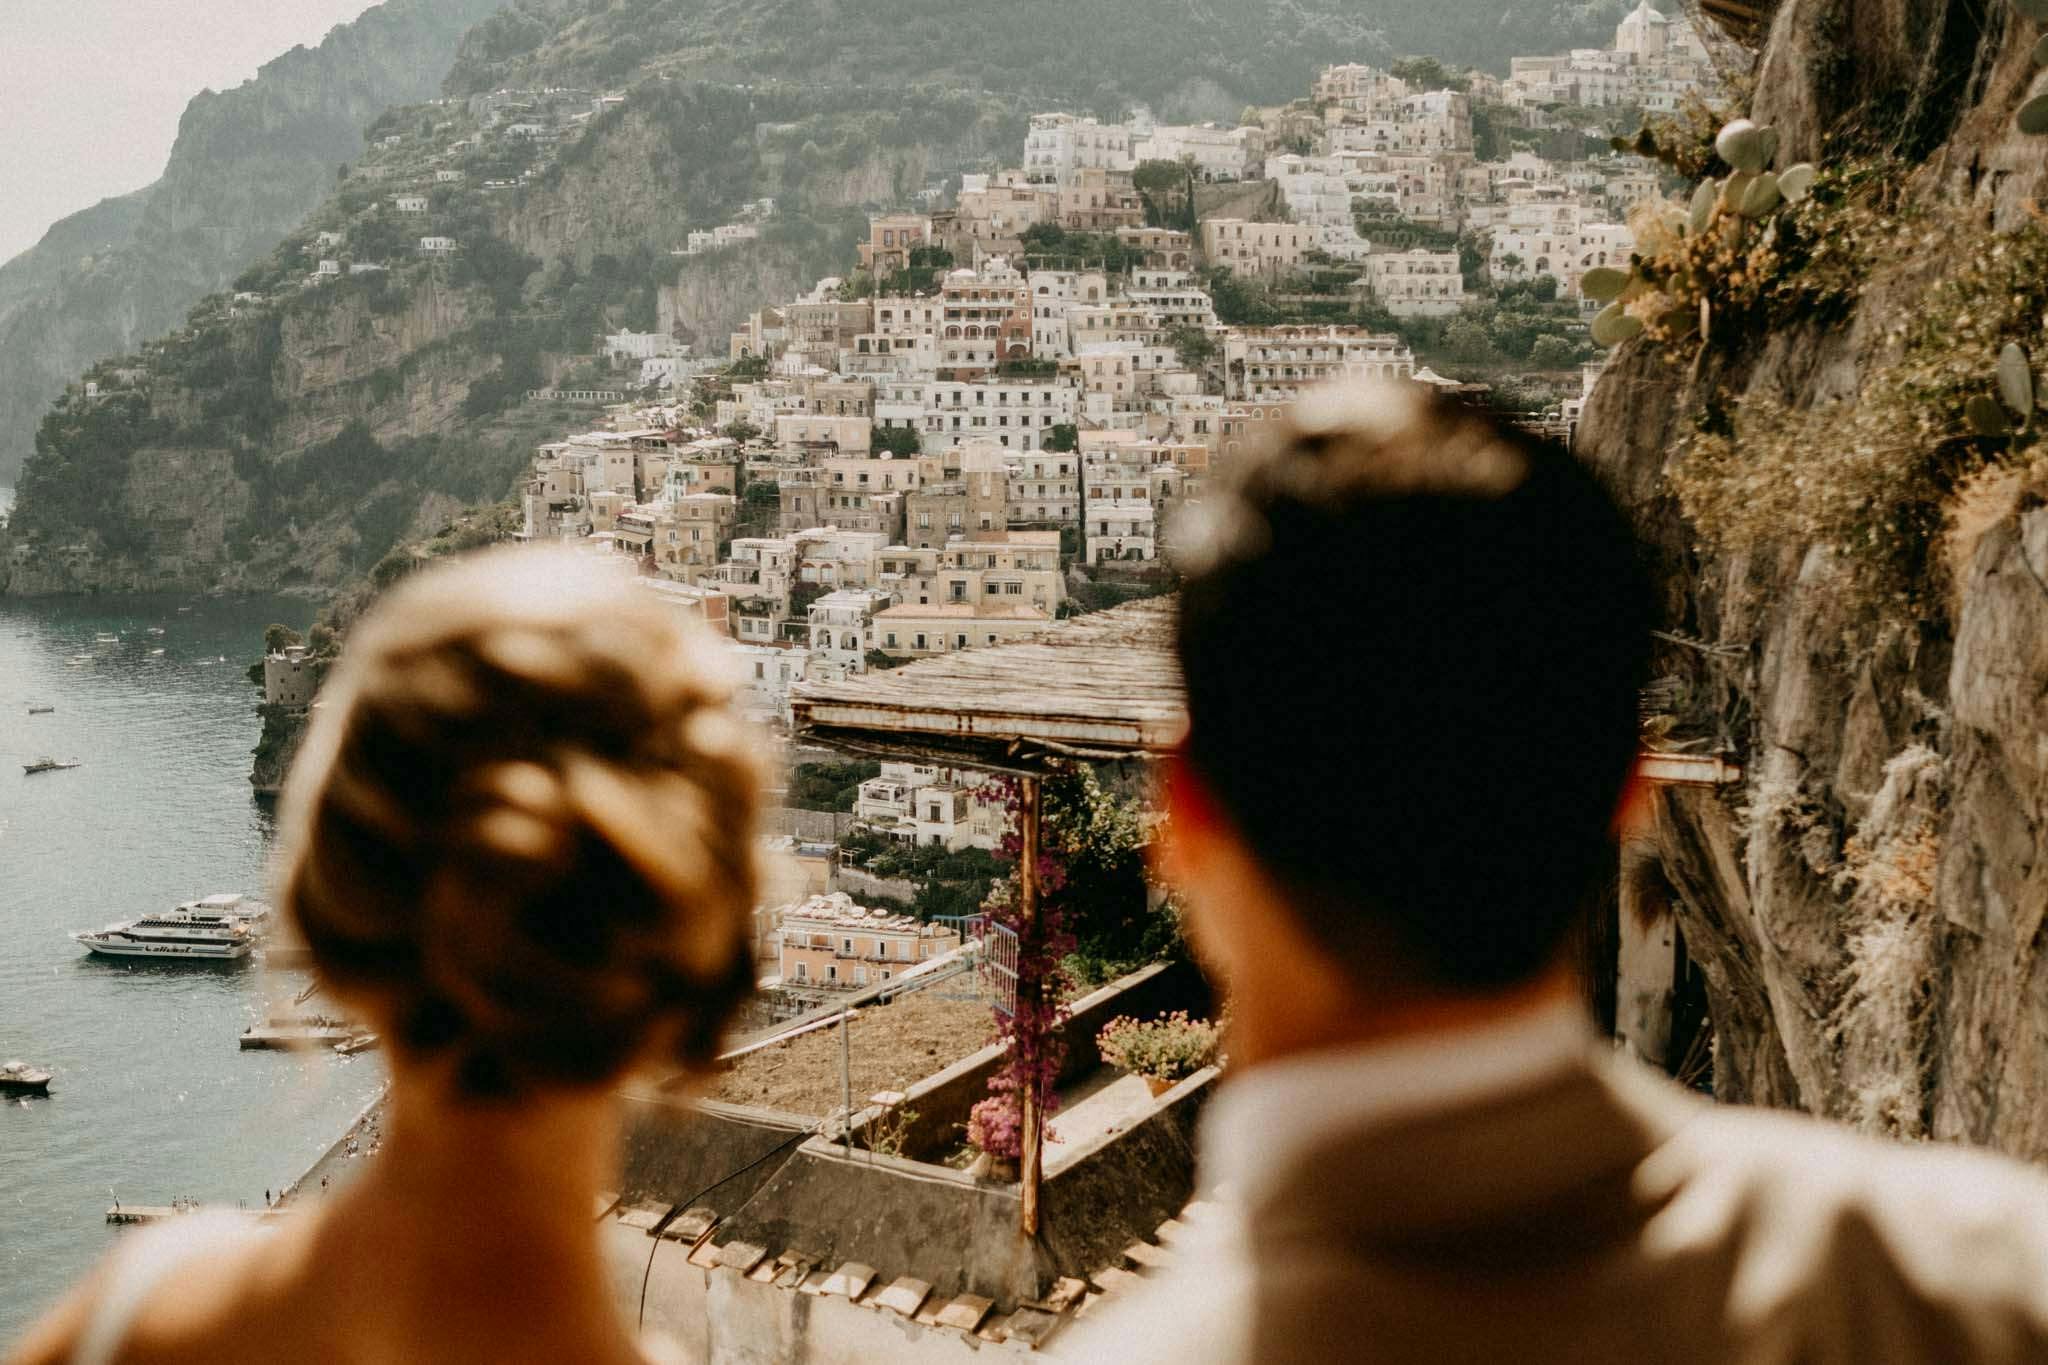 Top 10 Wedding Venues Amalfi Coast: Villas & Hotels